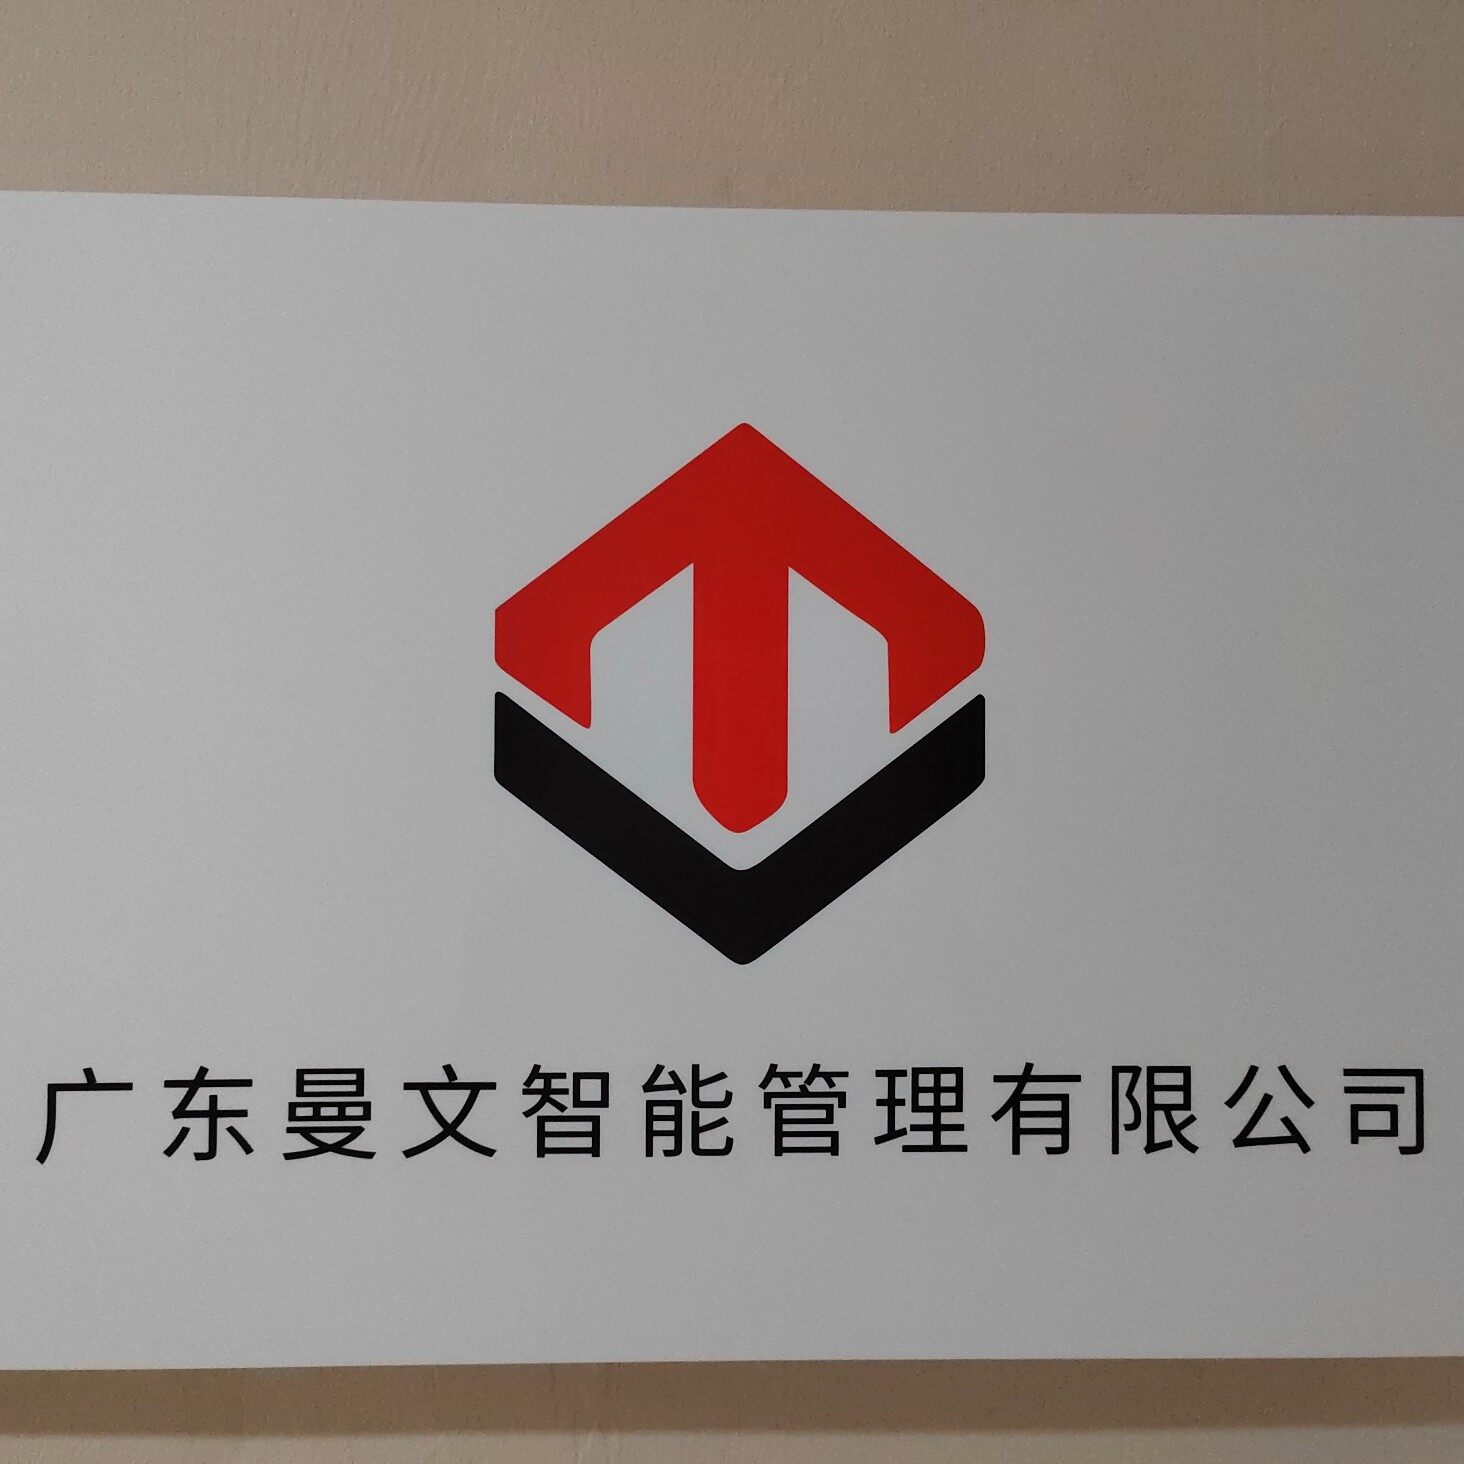 广东曼文智能科技有限公司logo